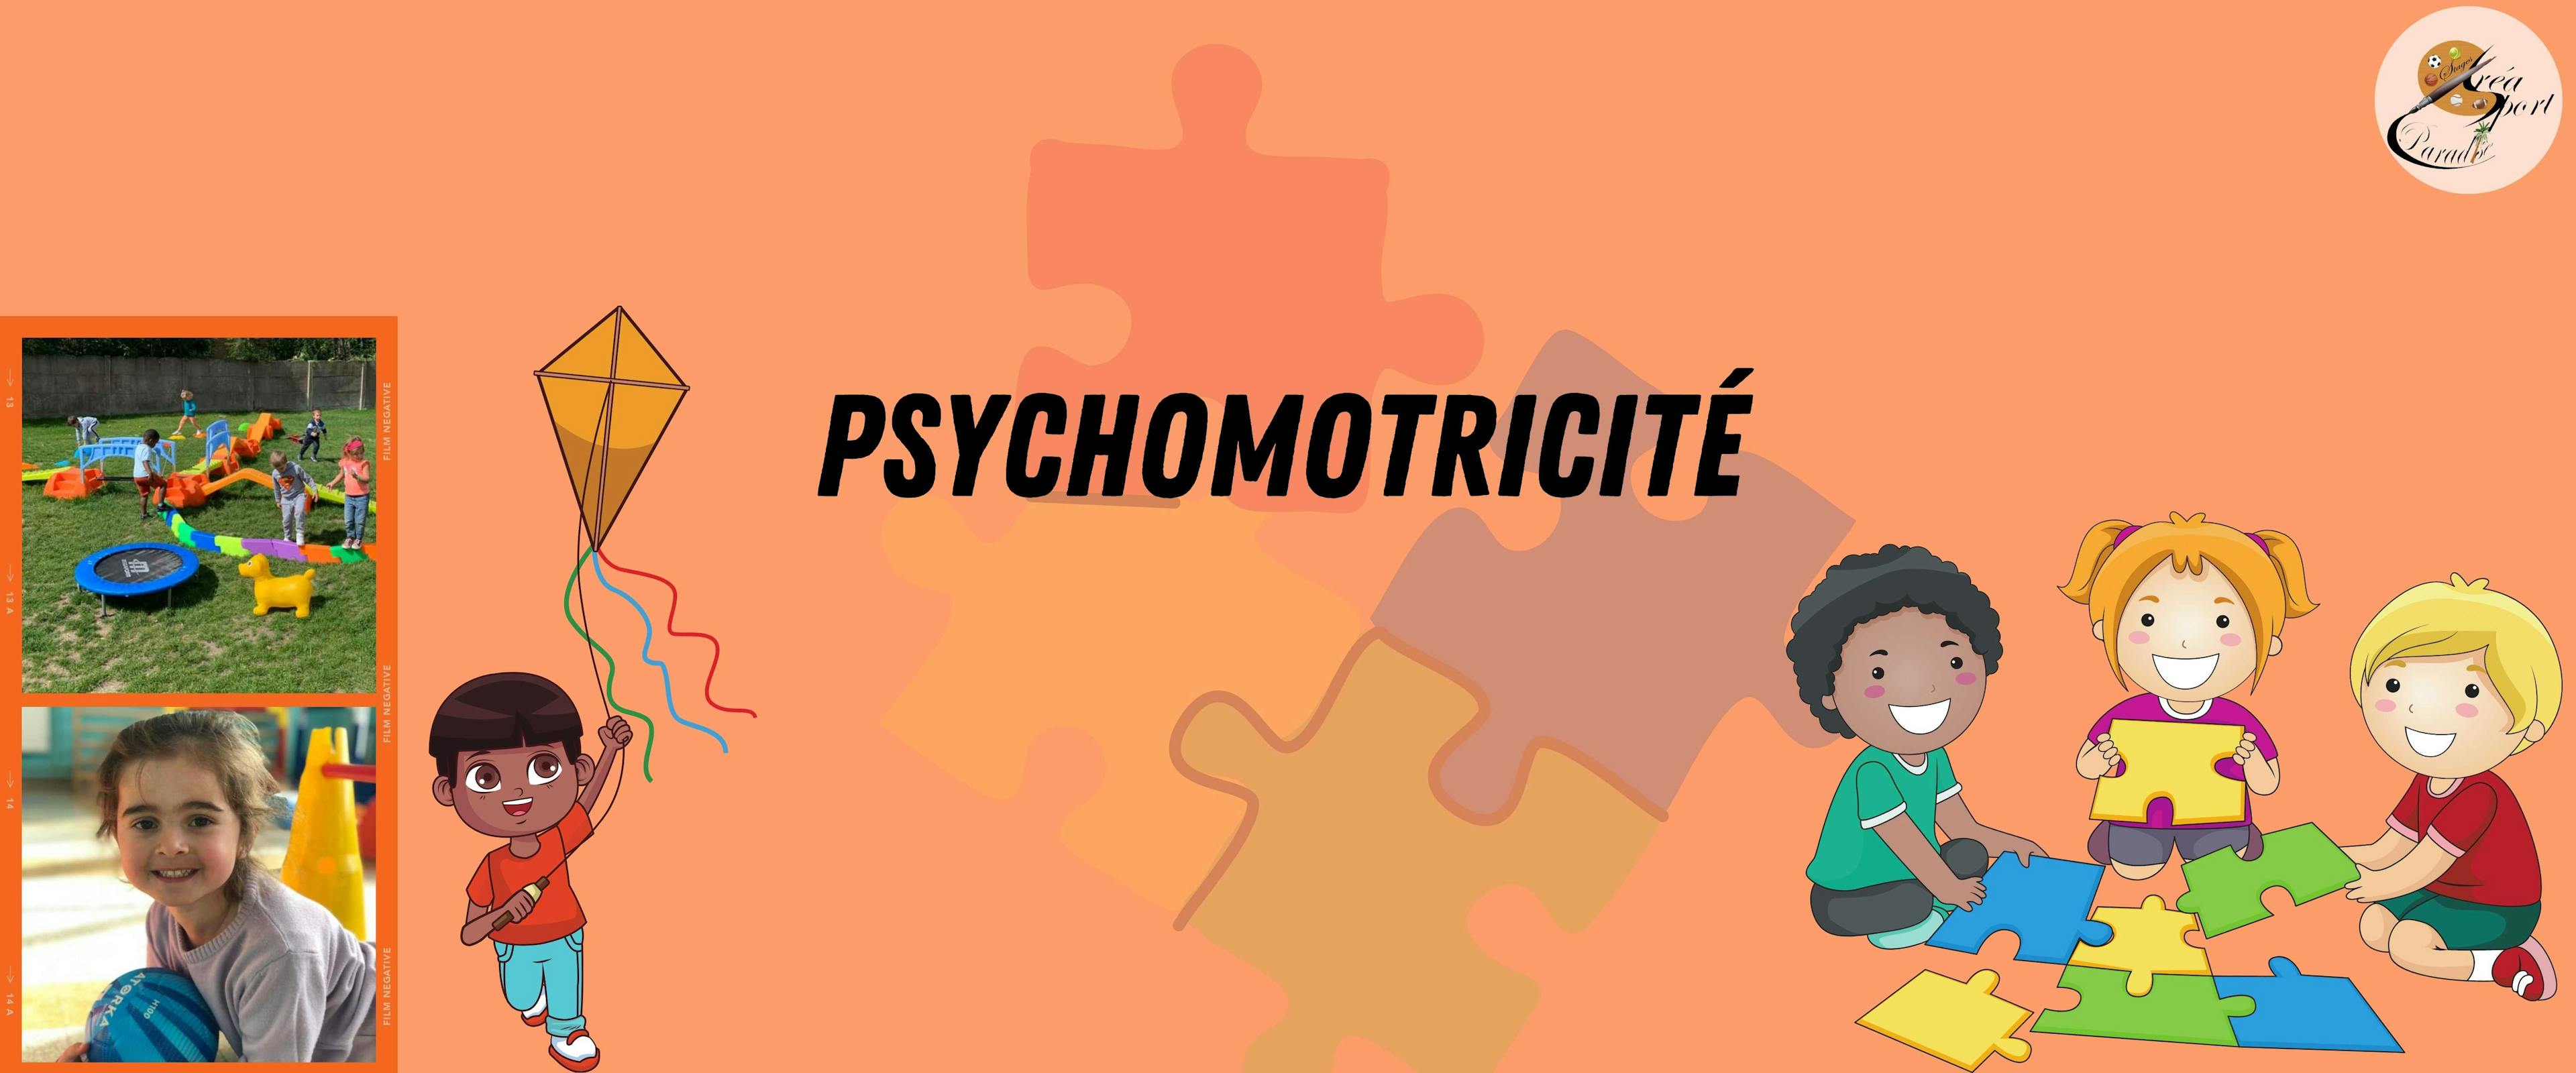 Automne S1 : Psychomotricité